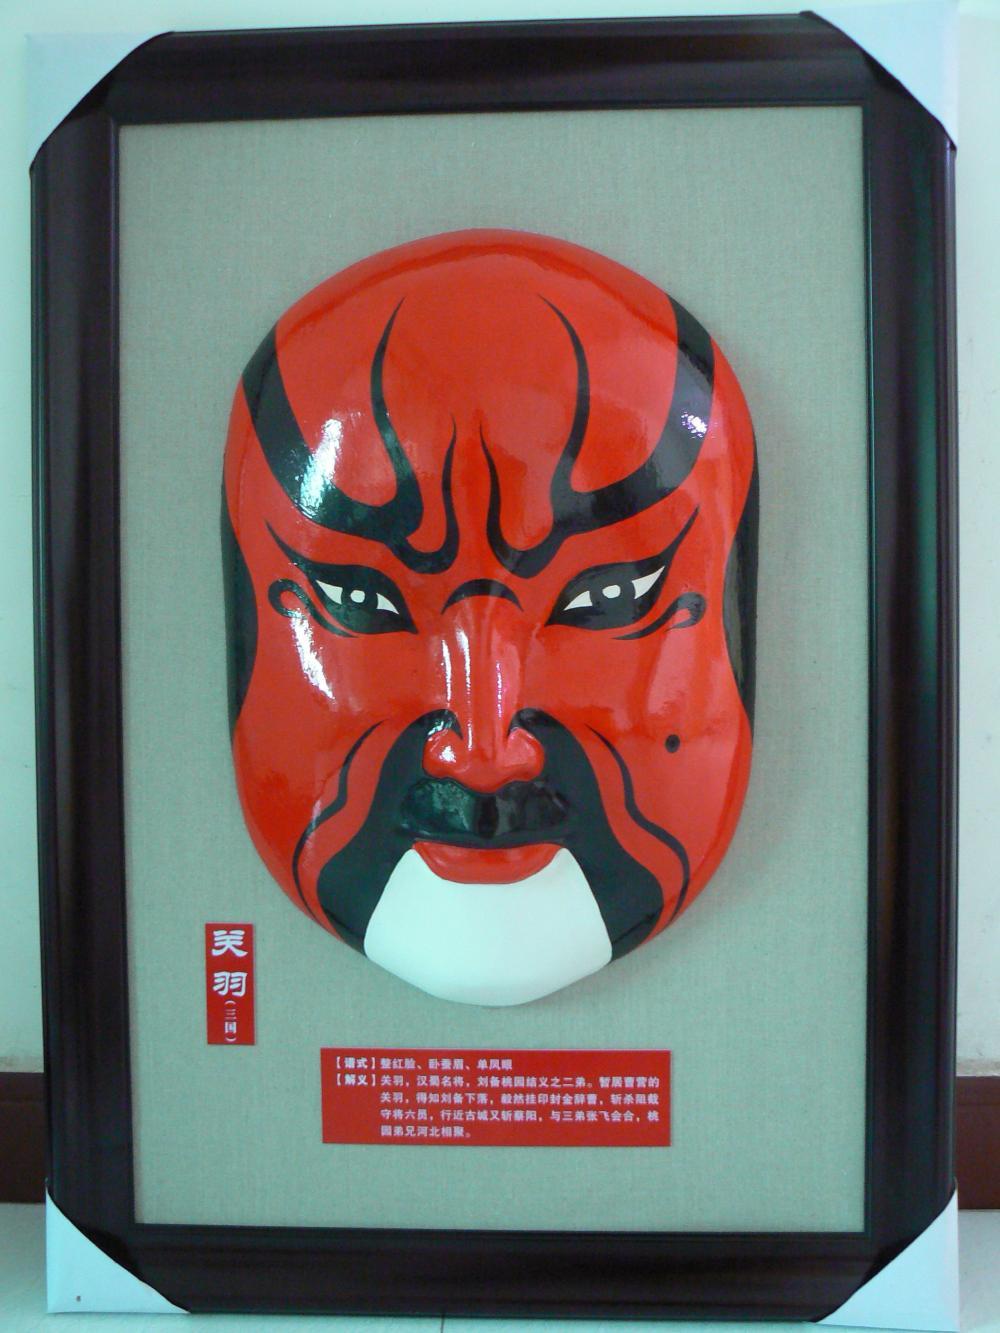 中国京剧脸谱文化您知道多少呢?